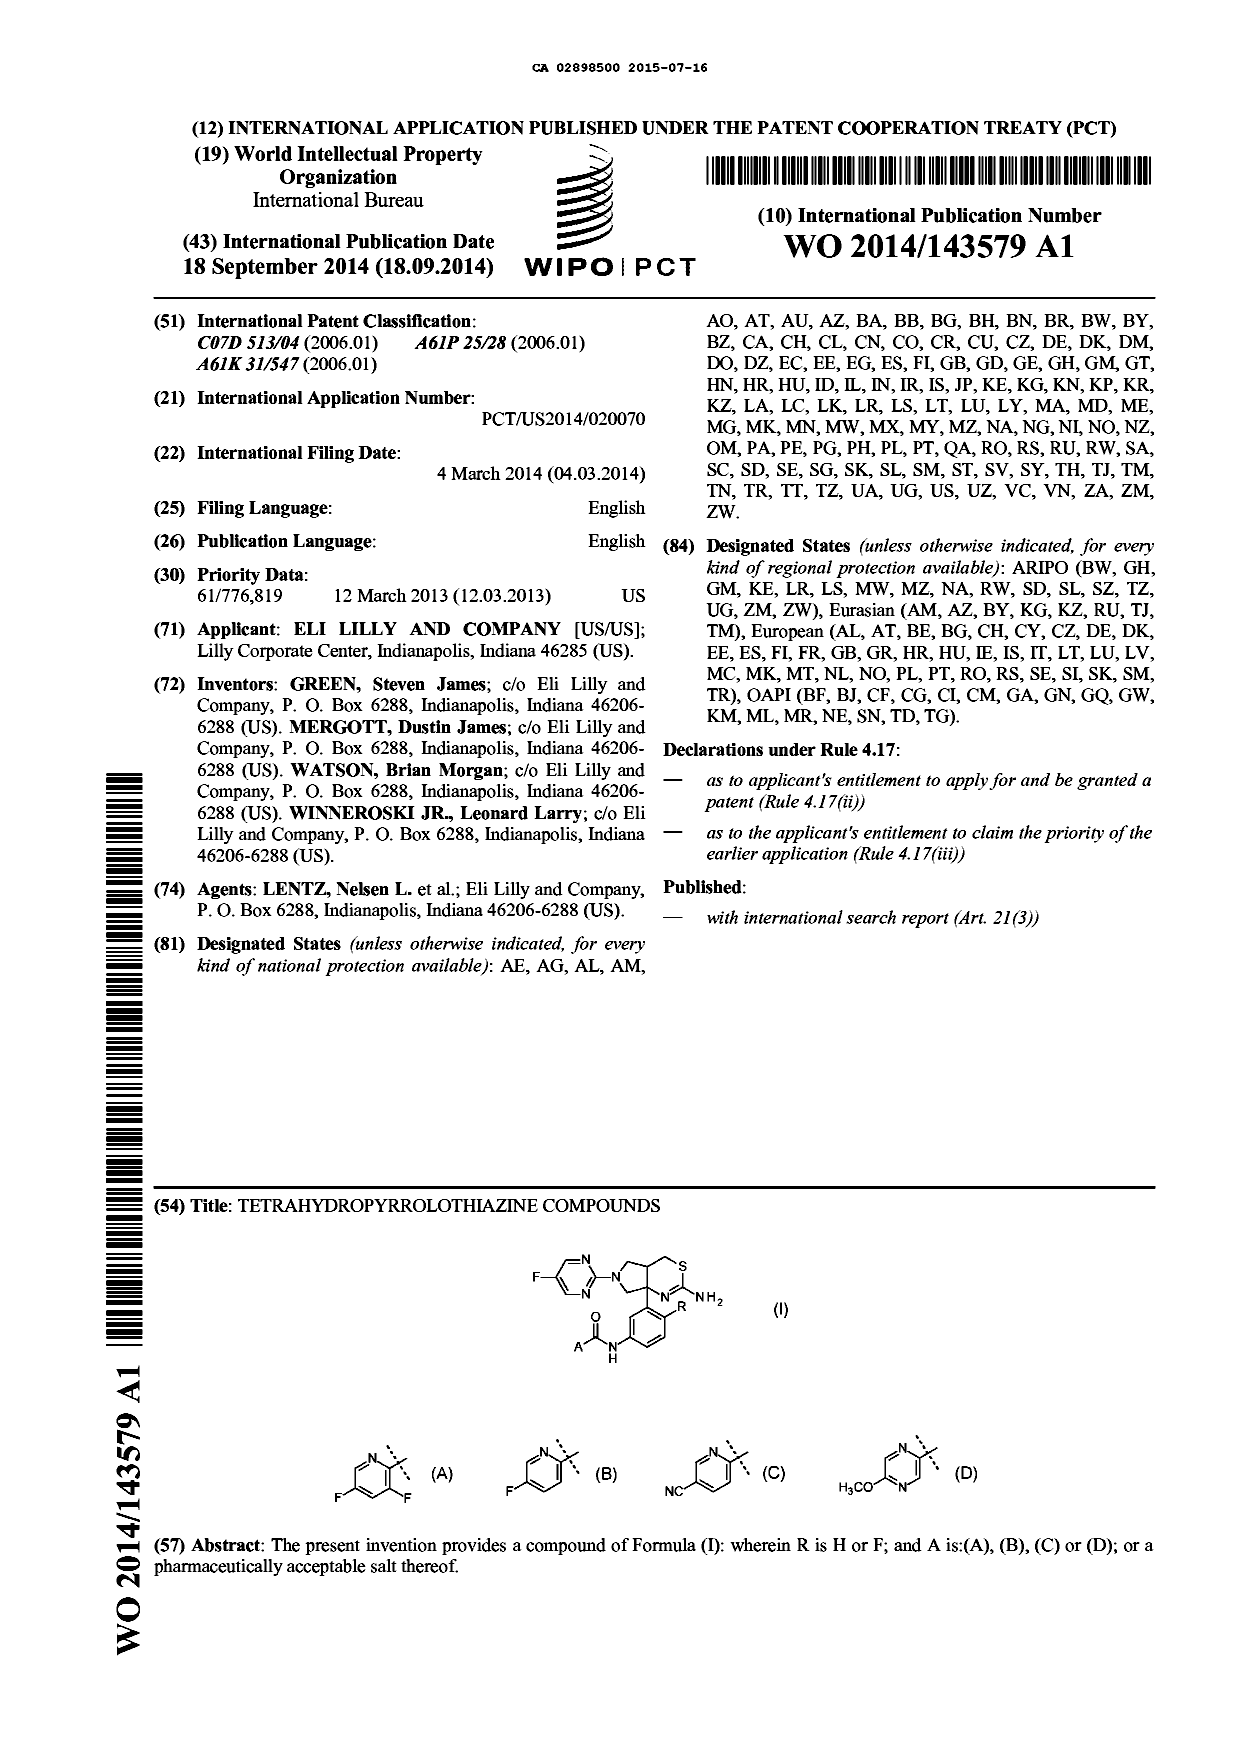 Document de brevet canadien 2898500. Abrégé 20150716. Image 1 de 1